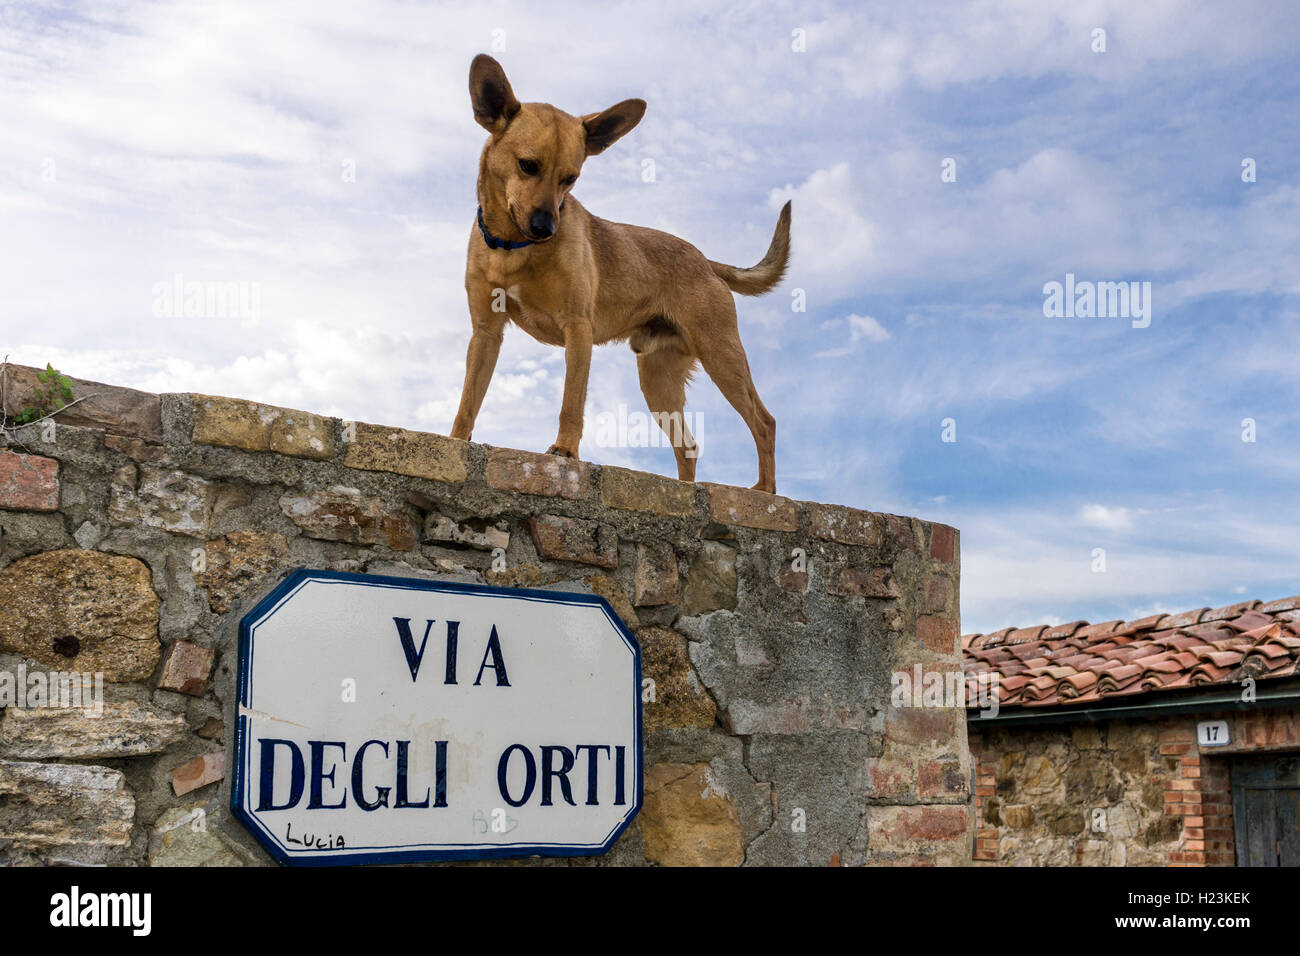 Vicolo stretto, case di pietra in città, cane permanente sulla parete, San Quirico d'Orcia, Toscana, Italia Foto Stock